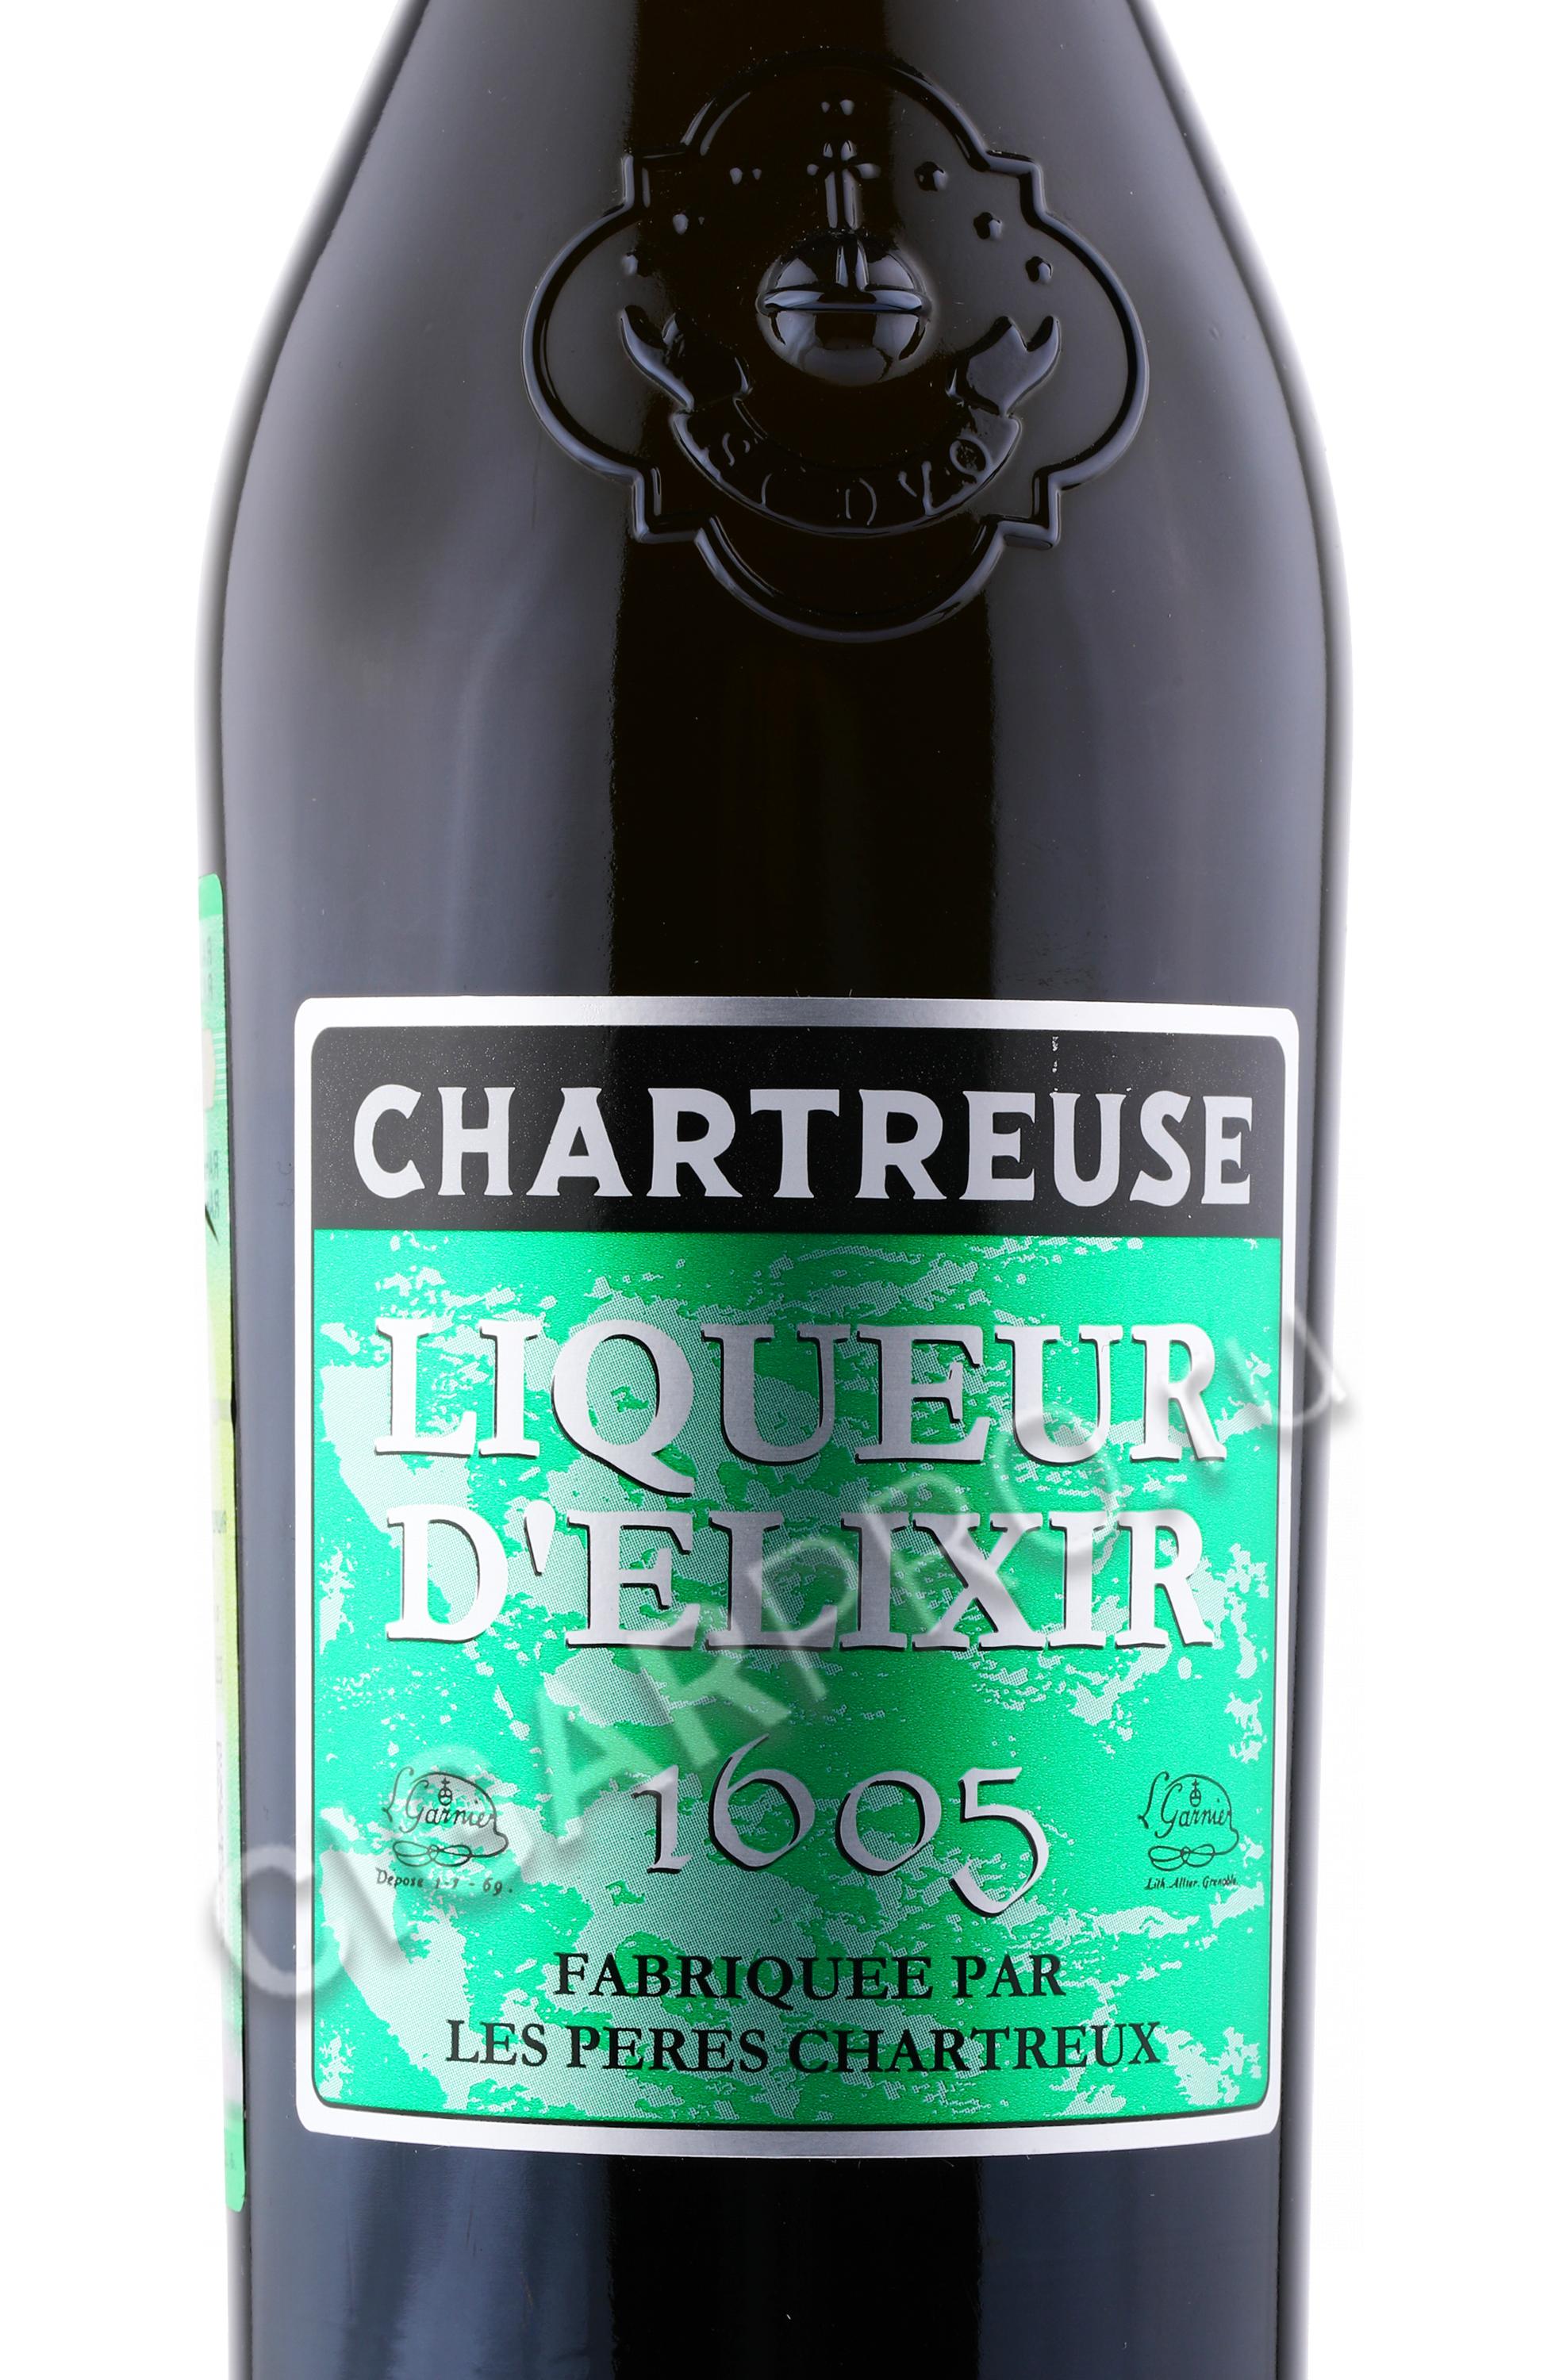 Купить ликер Chartreuse из Франции — цены на французский ликер Шартрез в магазинах WineStyle